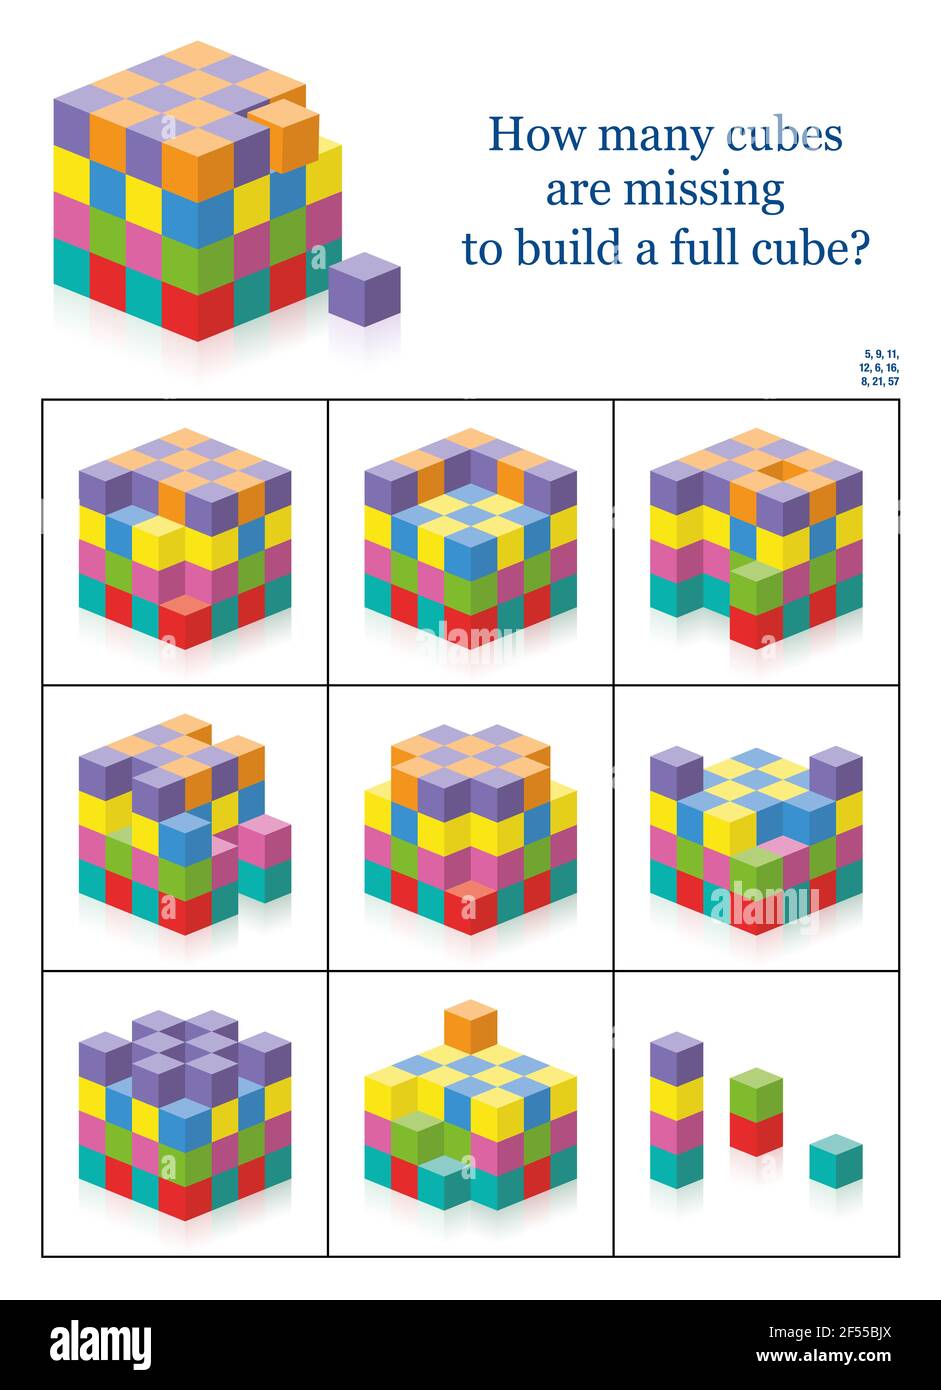 Cubi mancanti. Quanti spazi, fori, spazi vuoti ci sono per ottenere un cubo pieno? esercizio di percezione spaziale 3d. Gioco di conteggio colorato con soluzione. Foto Stock